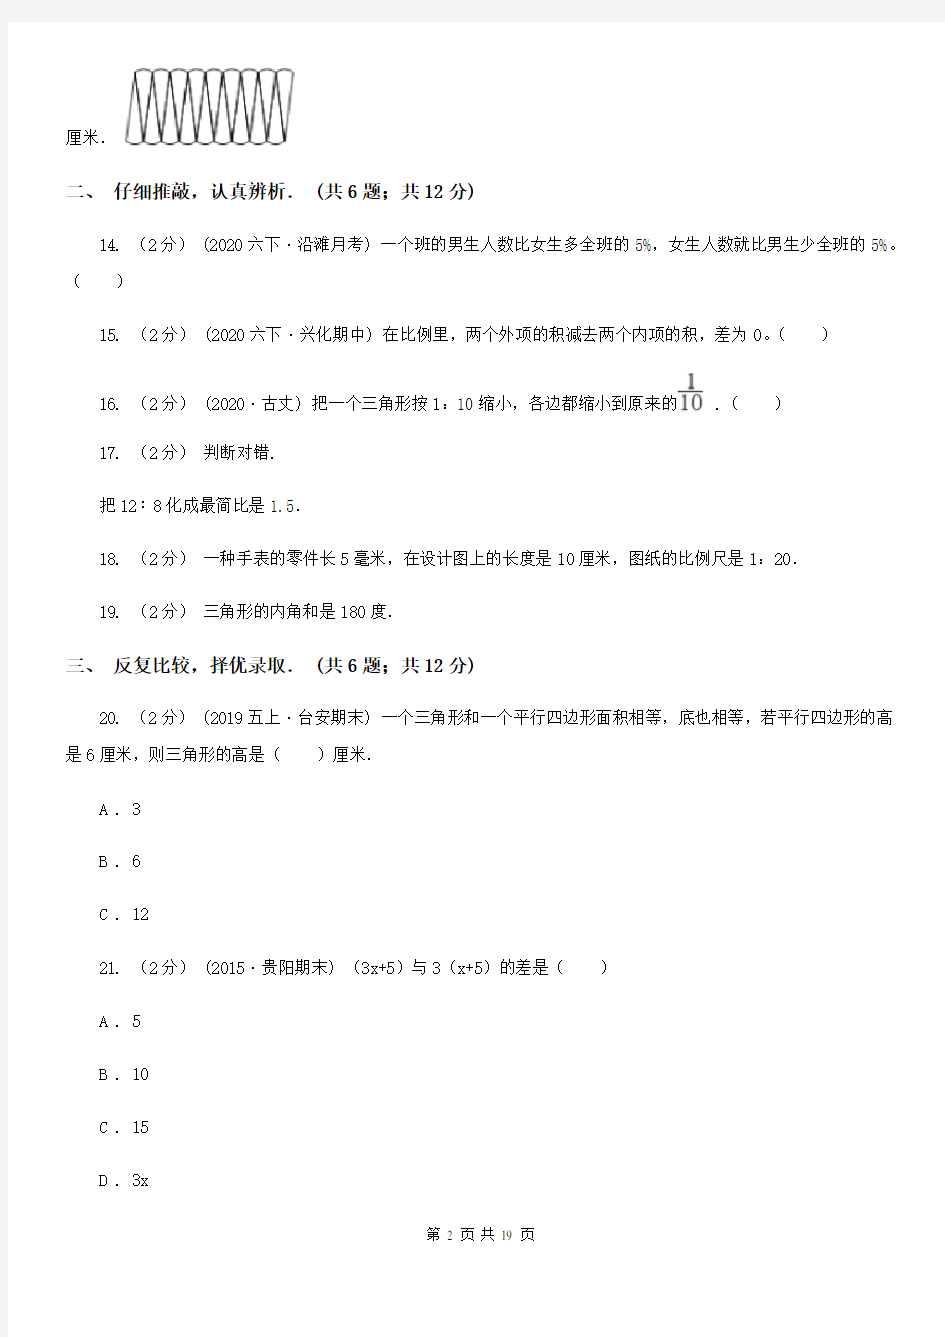 湖南省长沙市小升初入学分班考试数学试卷(3)